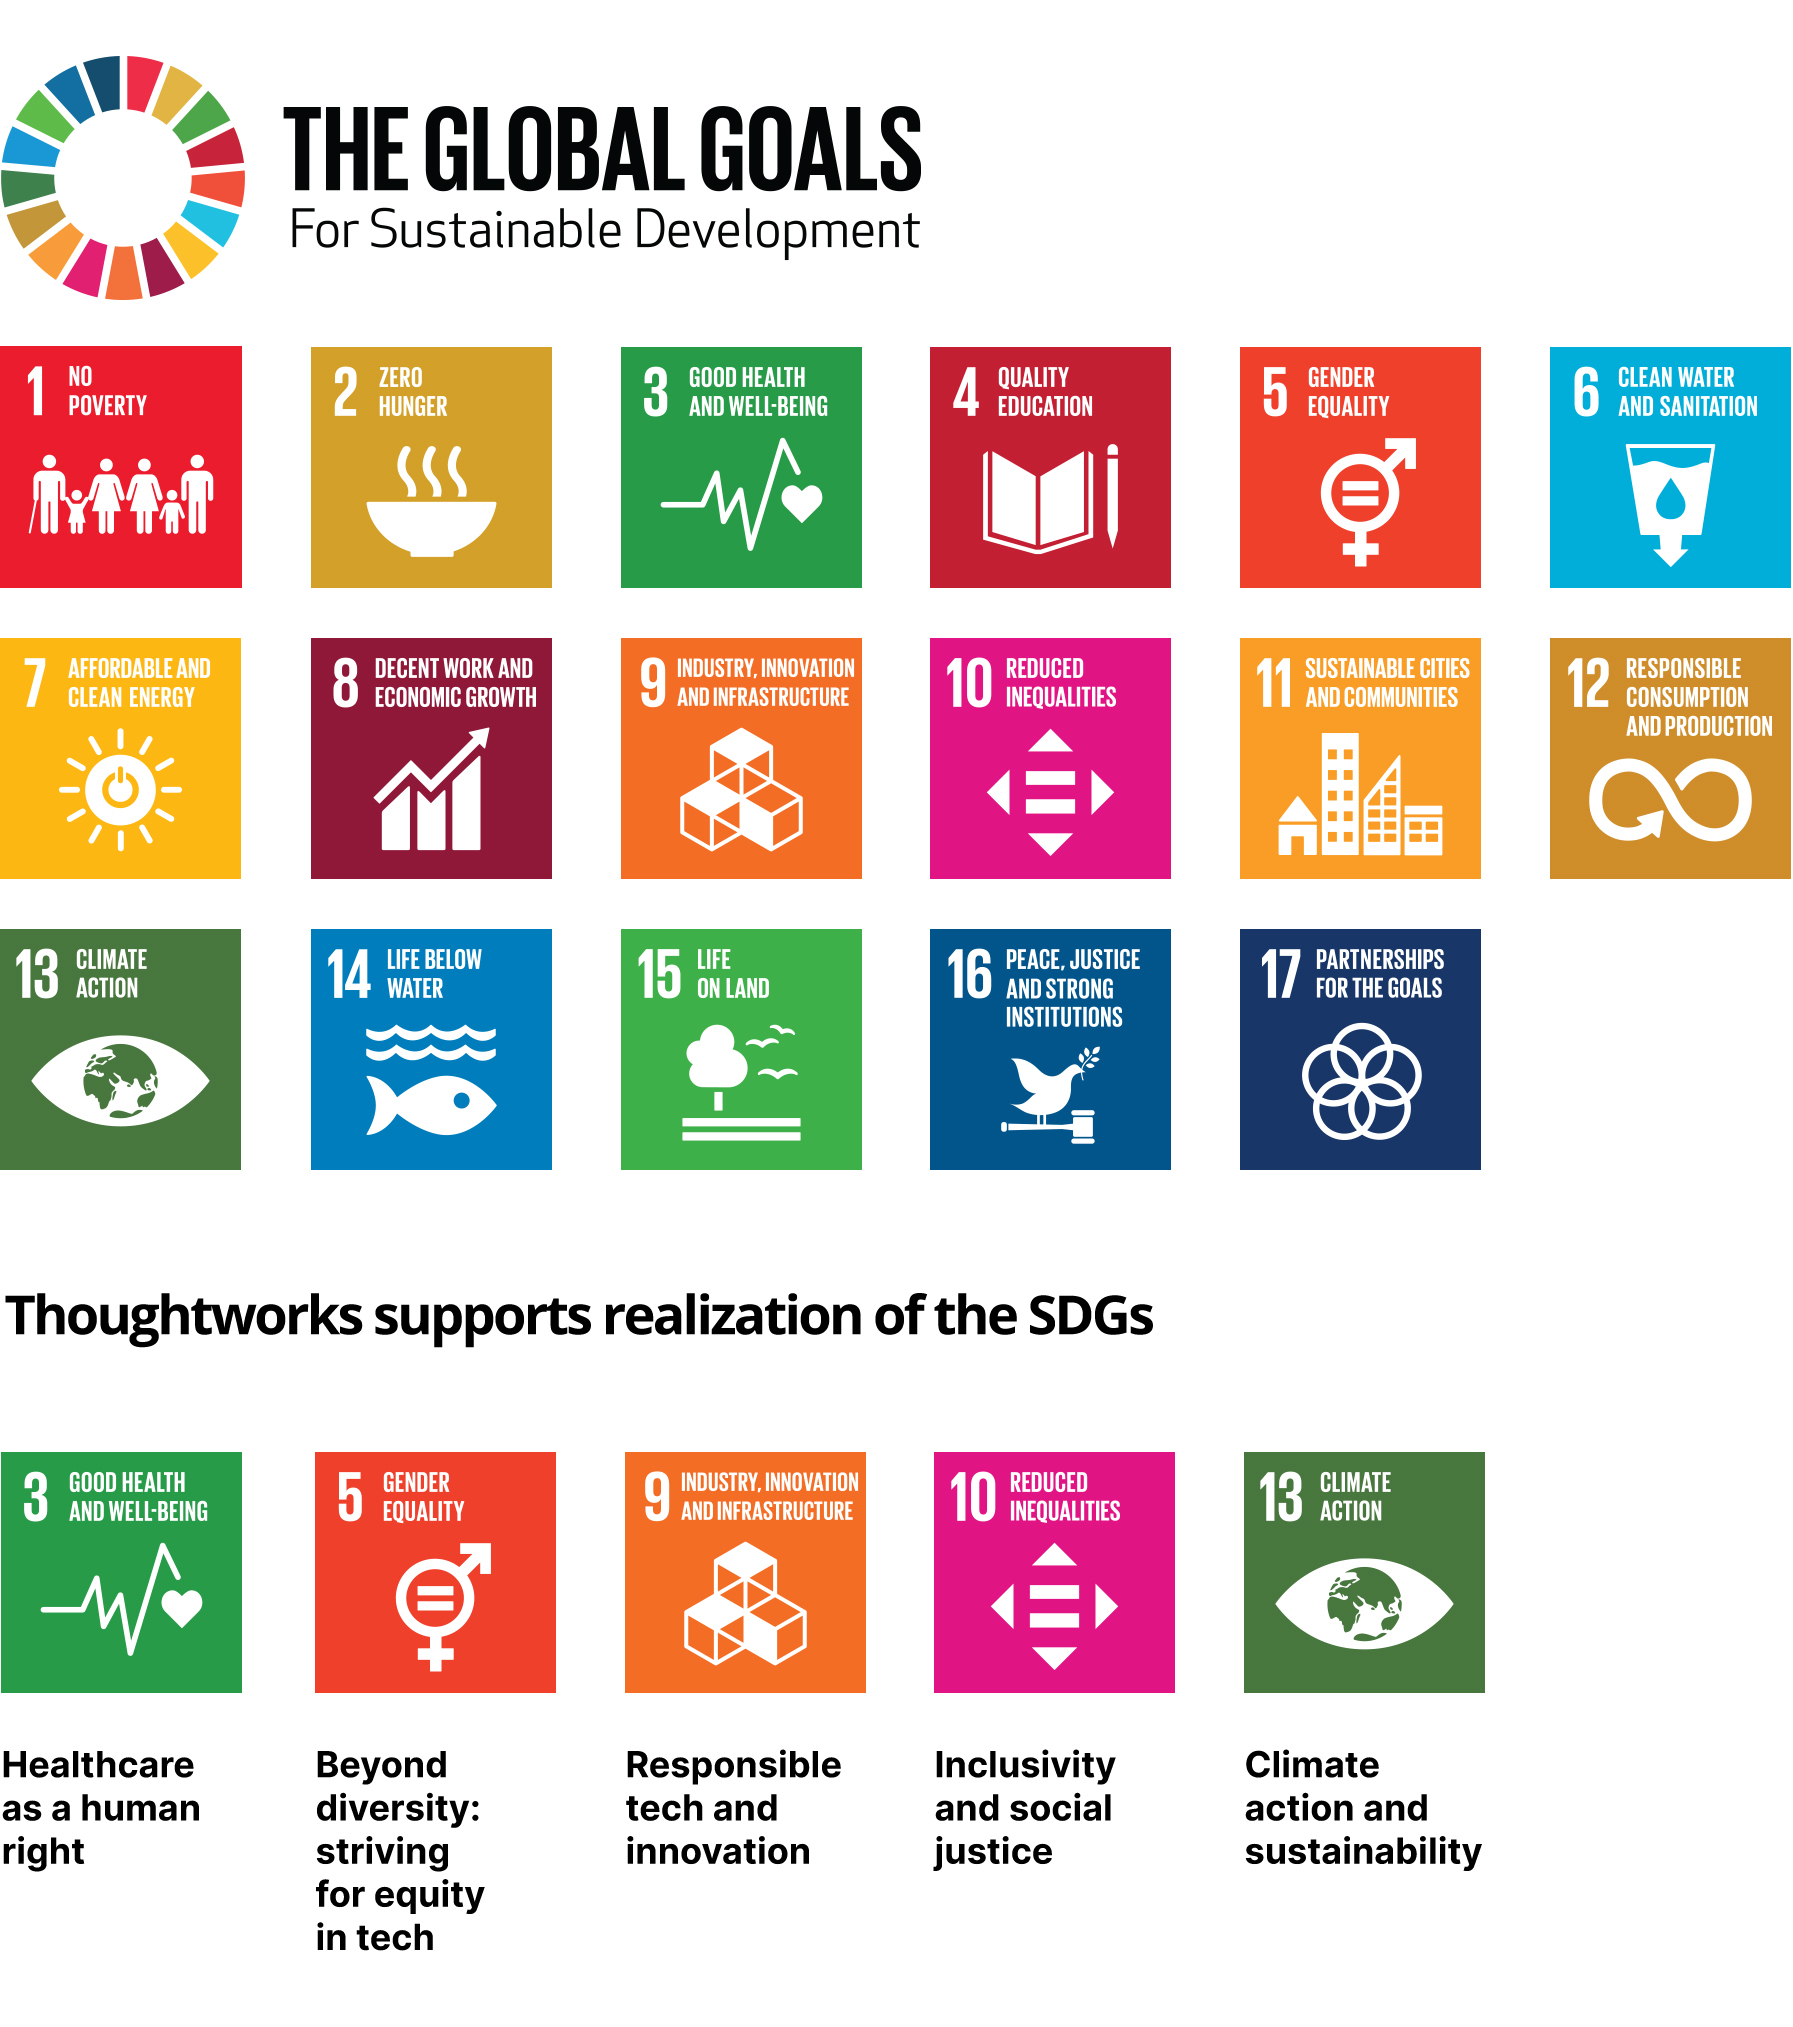 图表显示了17个图标，联合国全球可持续发展目标(SDGs)。188bet宝金博app下载Thoughtworks支持实现以下五点:良好的健康和幸福;性别平等;工业、创新和基础设施;减少不平等;气候行动。